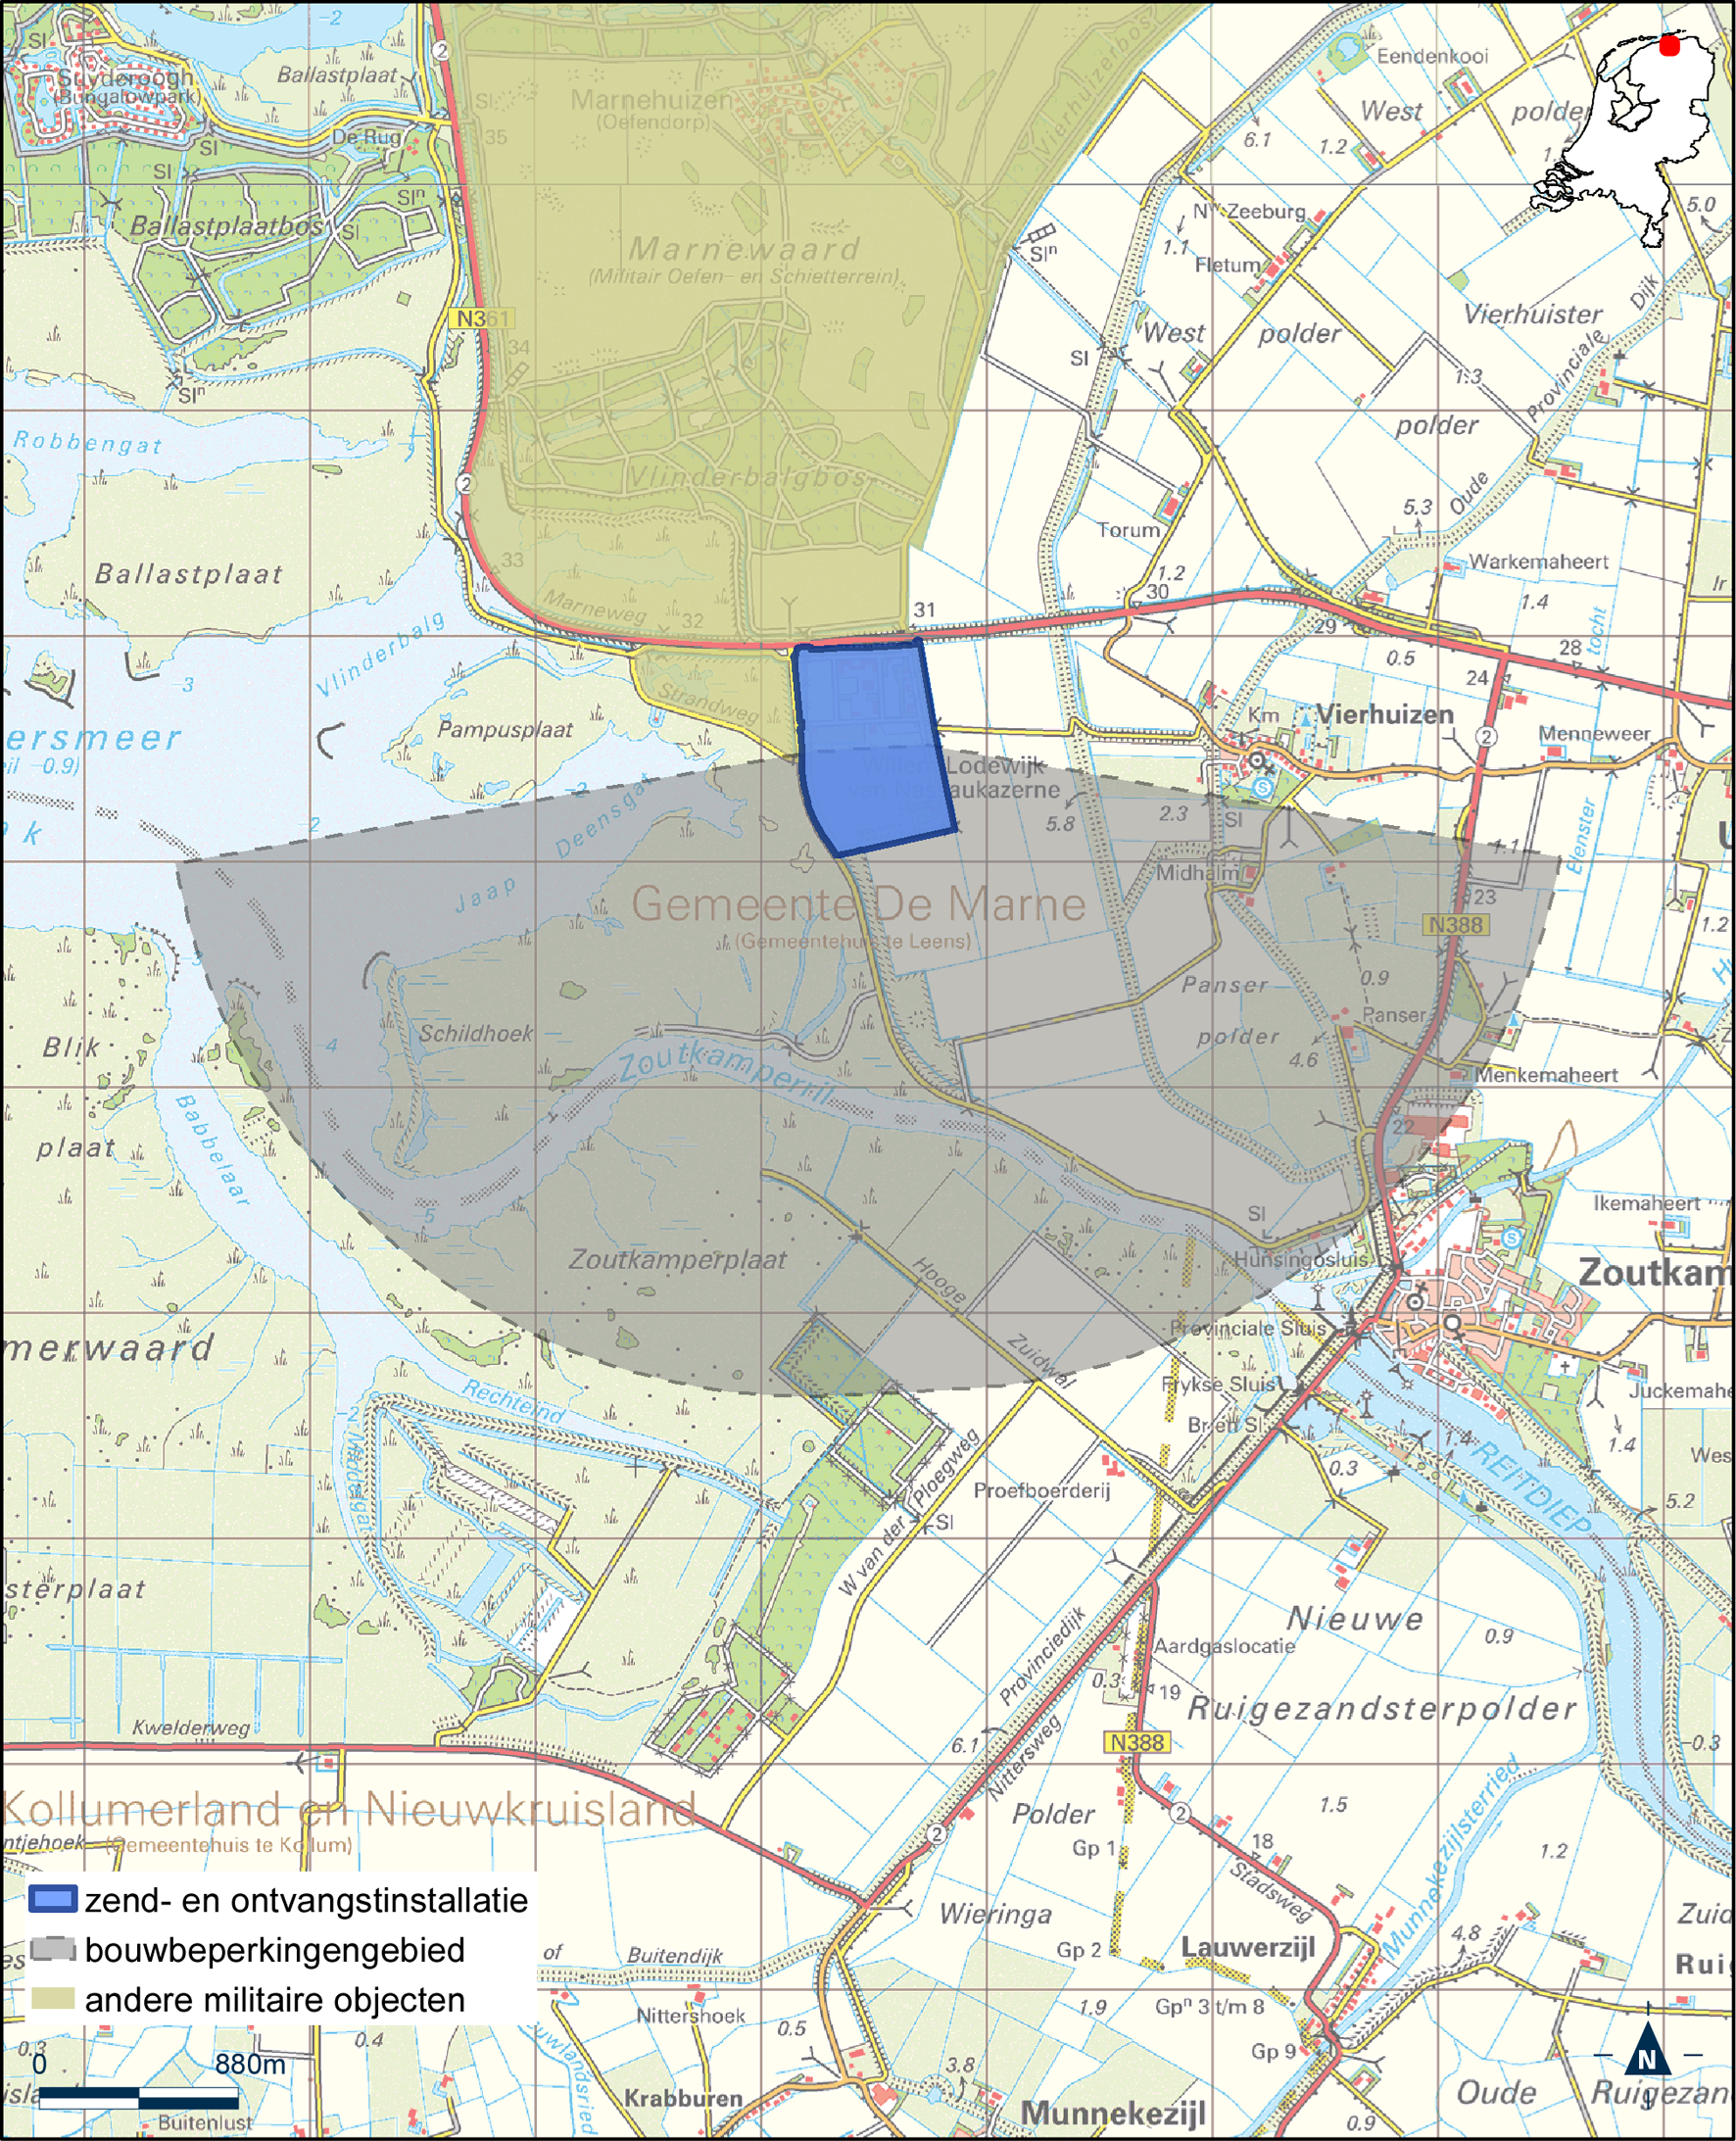 Kaart zend- en ontvangstinstallatie buiten militair luchtvaartterrein Willem Lodewijk van Nassaukazerne